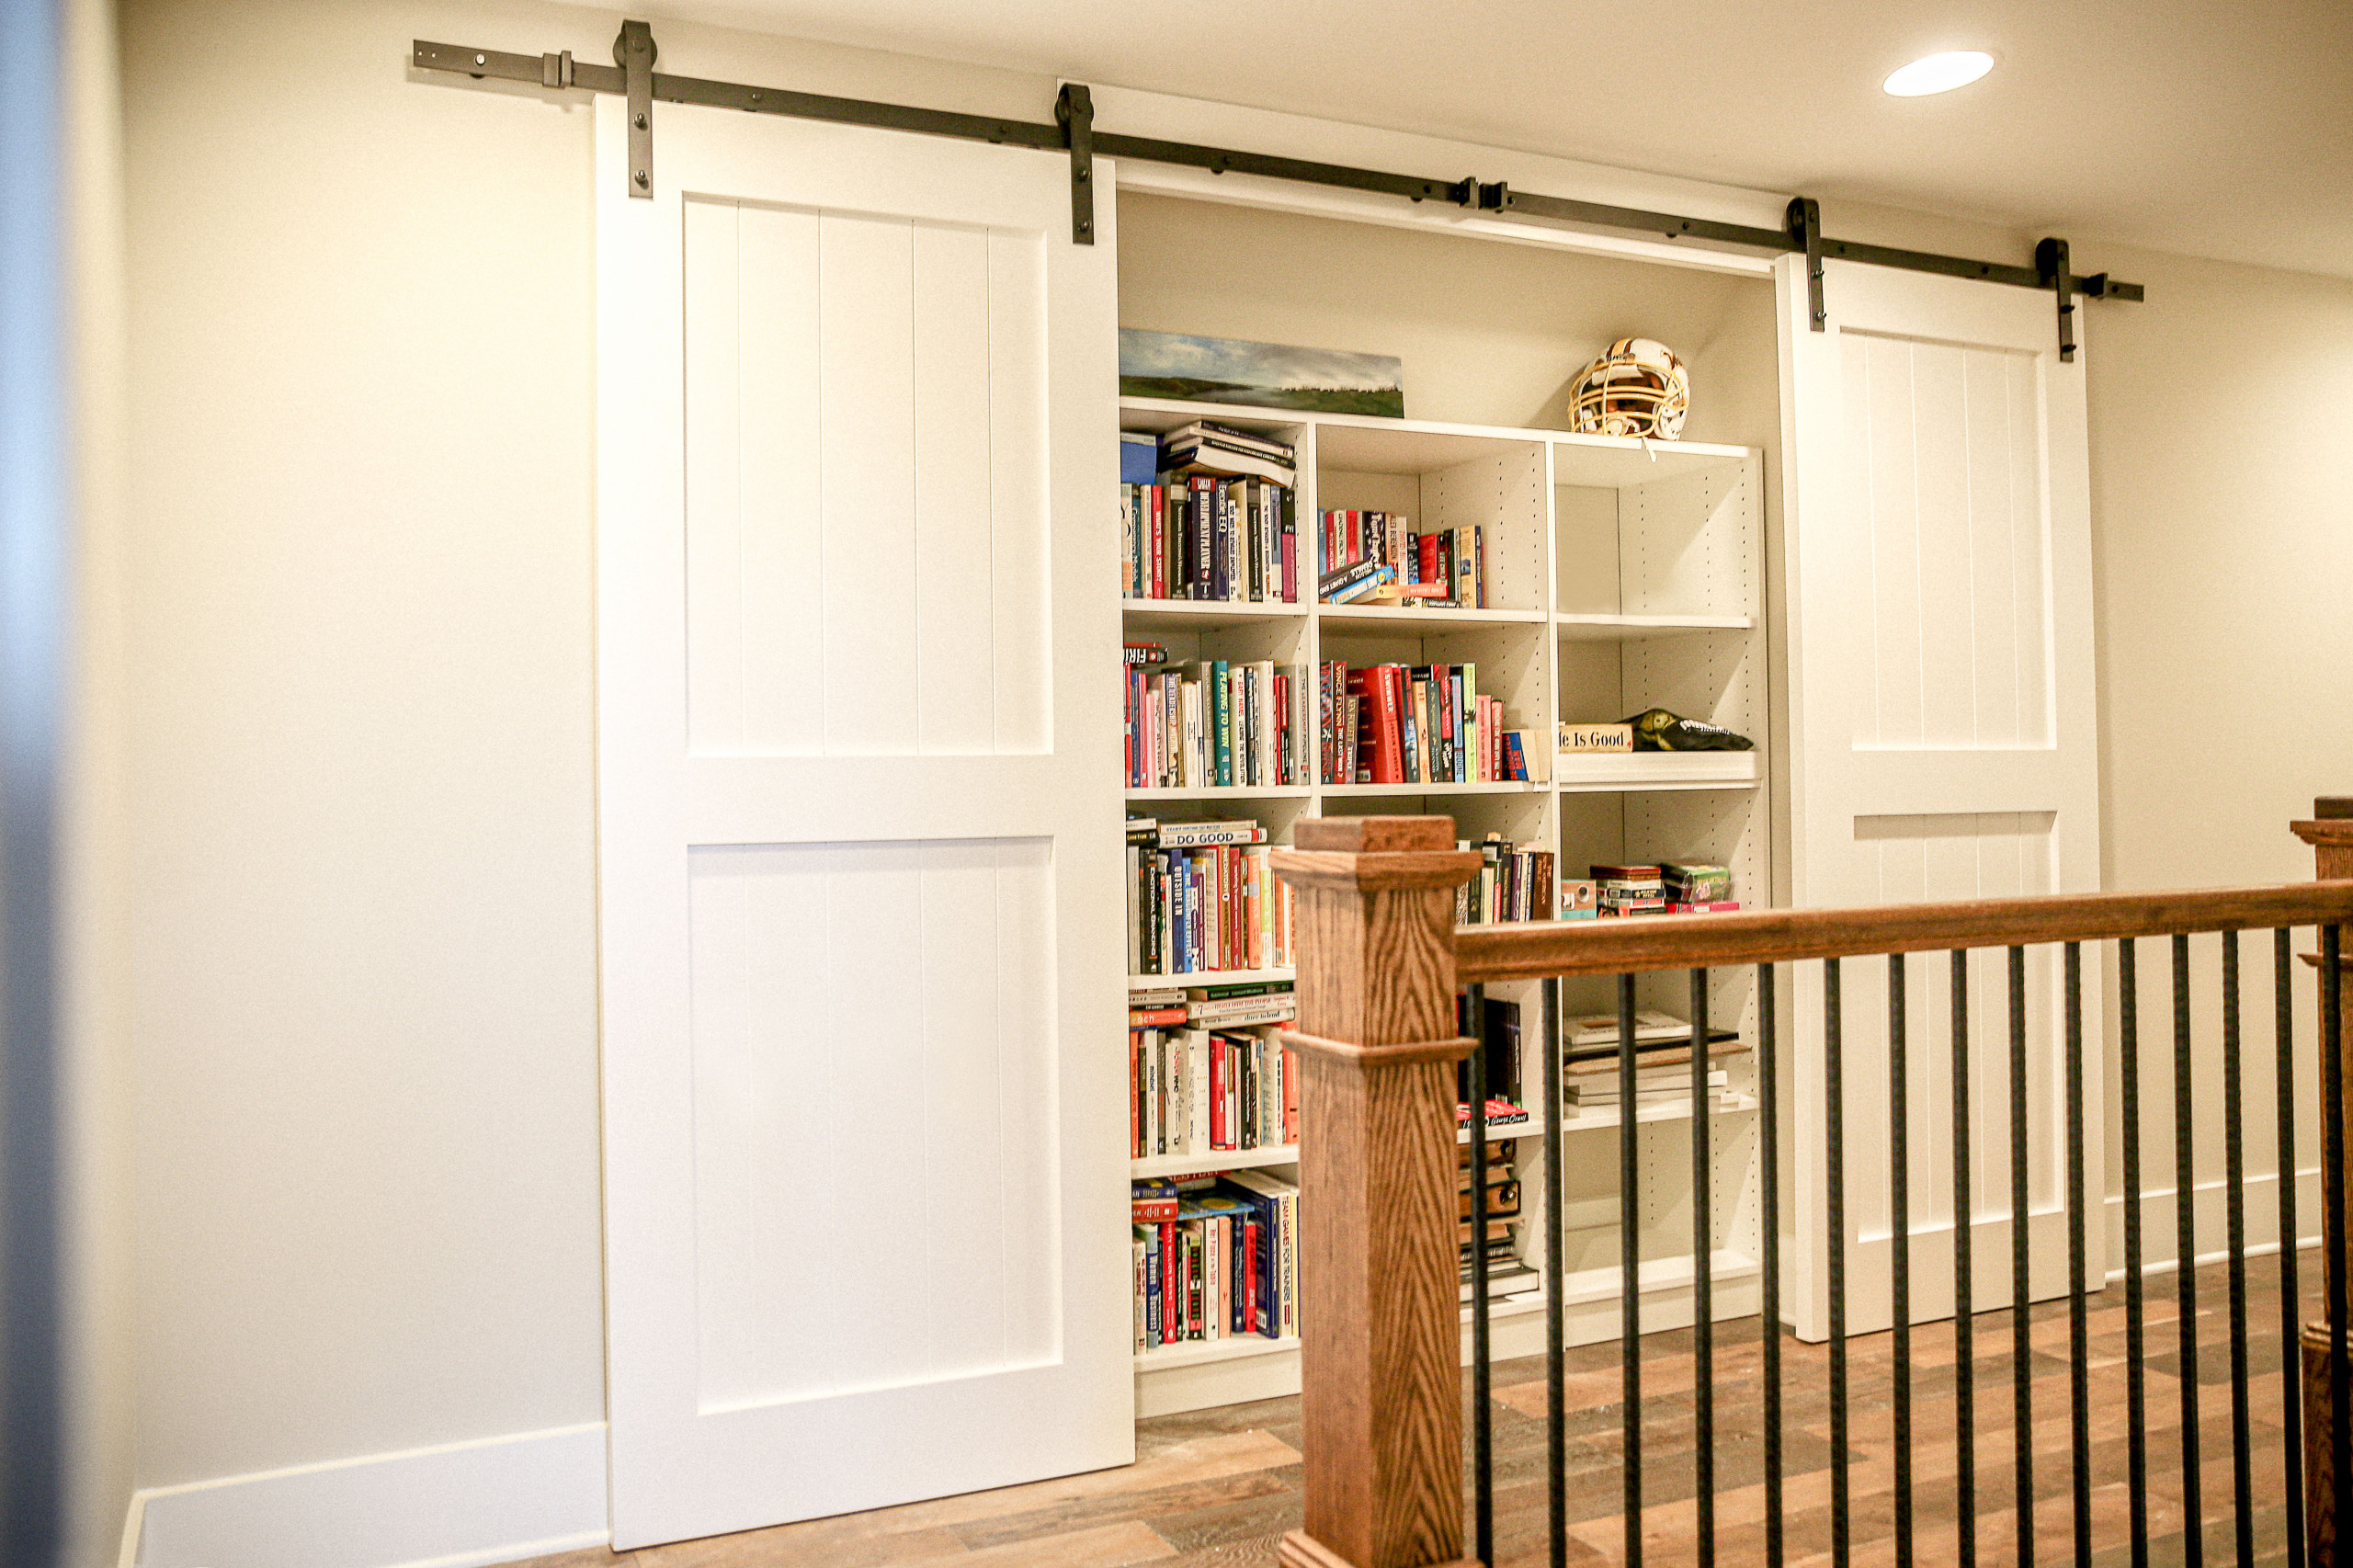 Custom made sliding barn doors to cover a custom made book shelf.